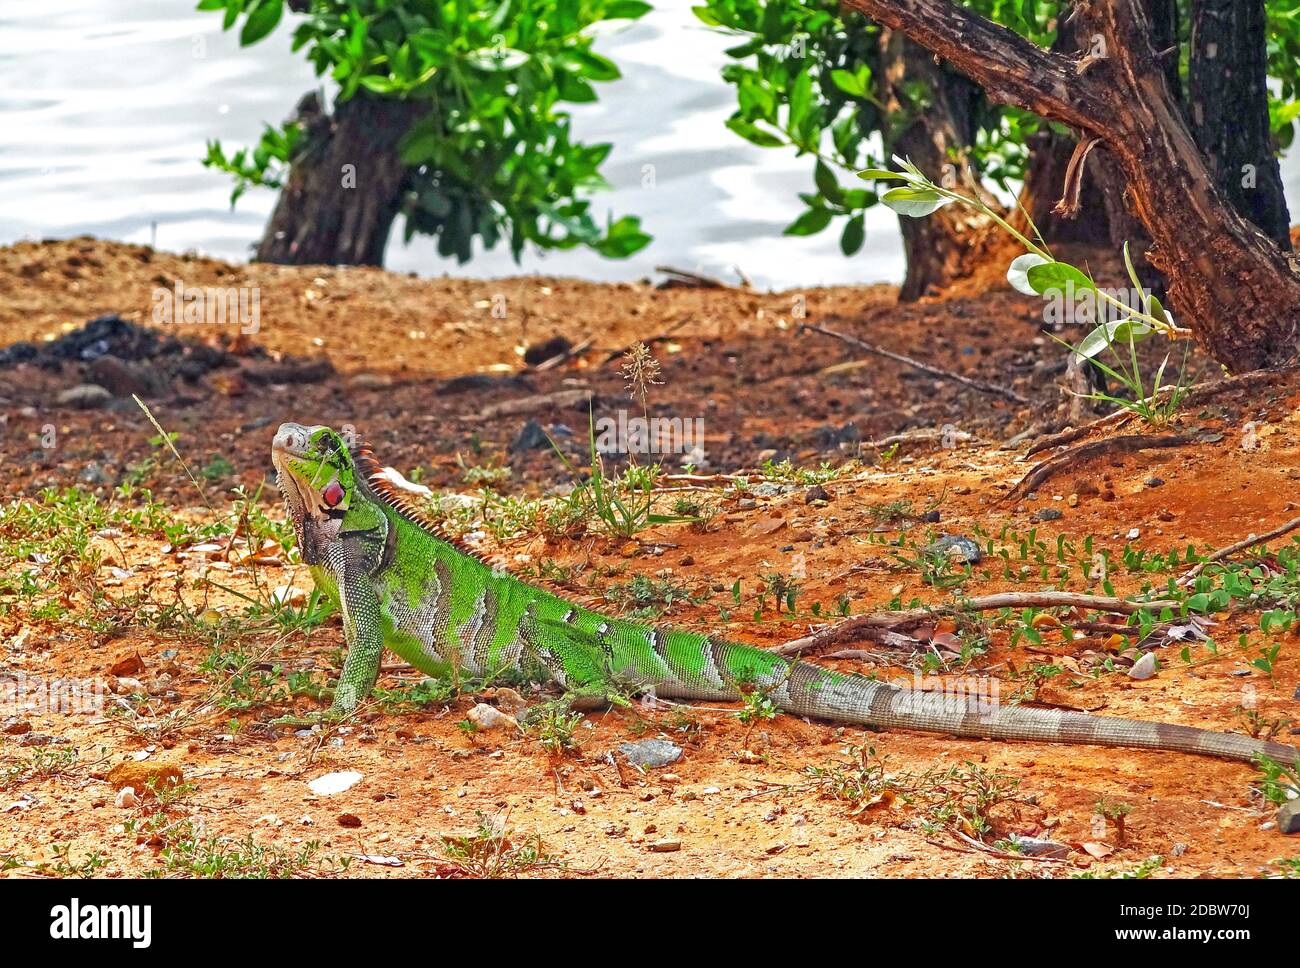 Iguana on Isla de Margarita Island, Venezuela Stock Photo